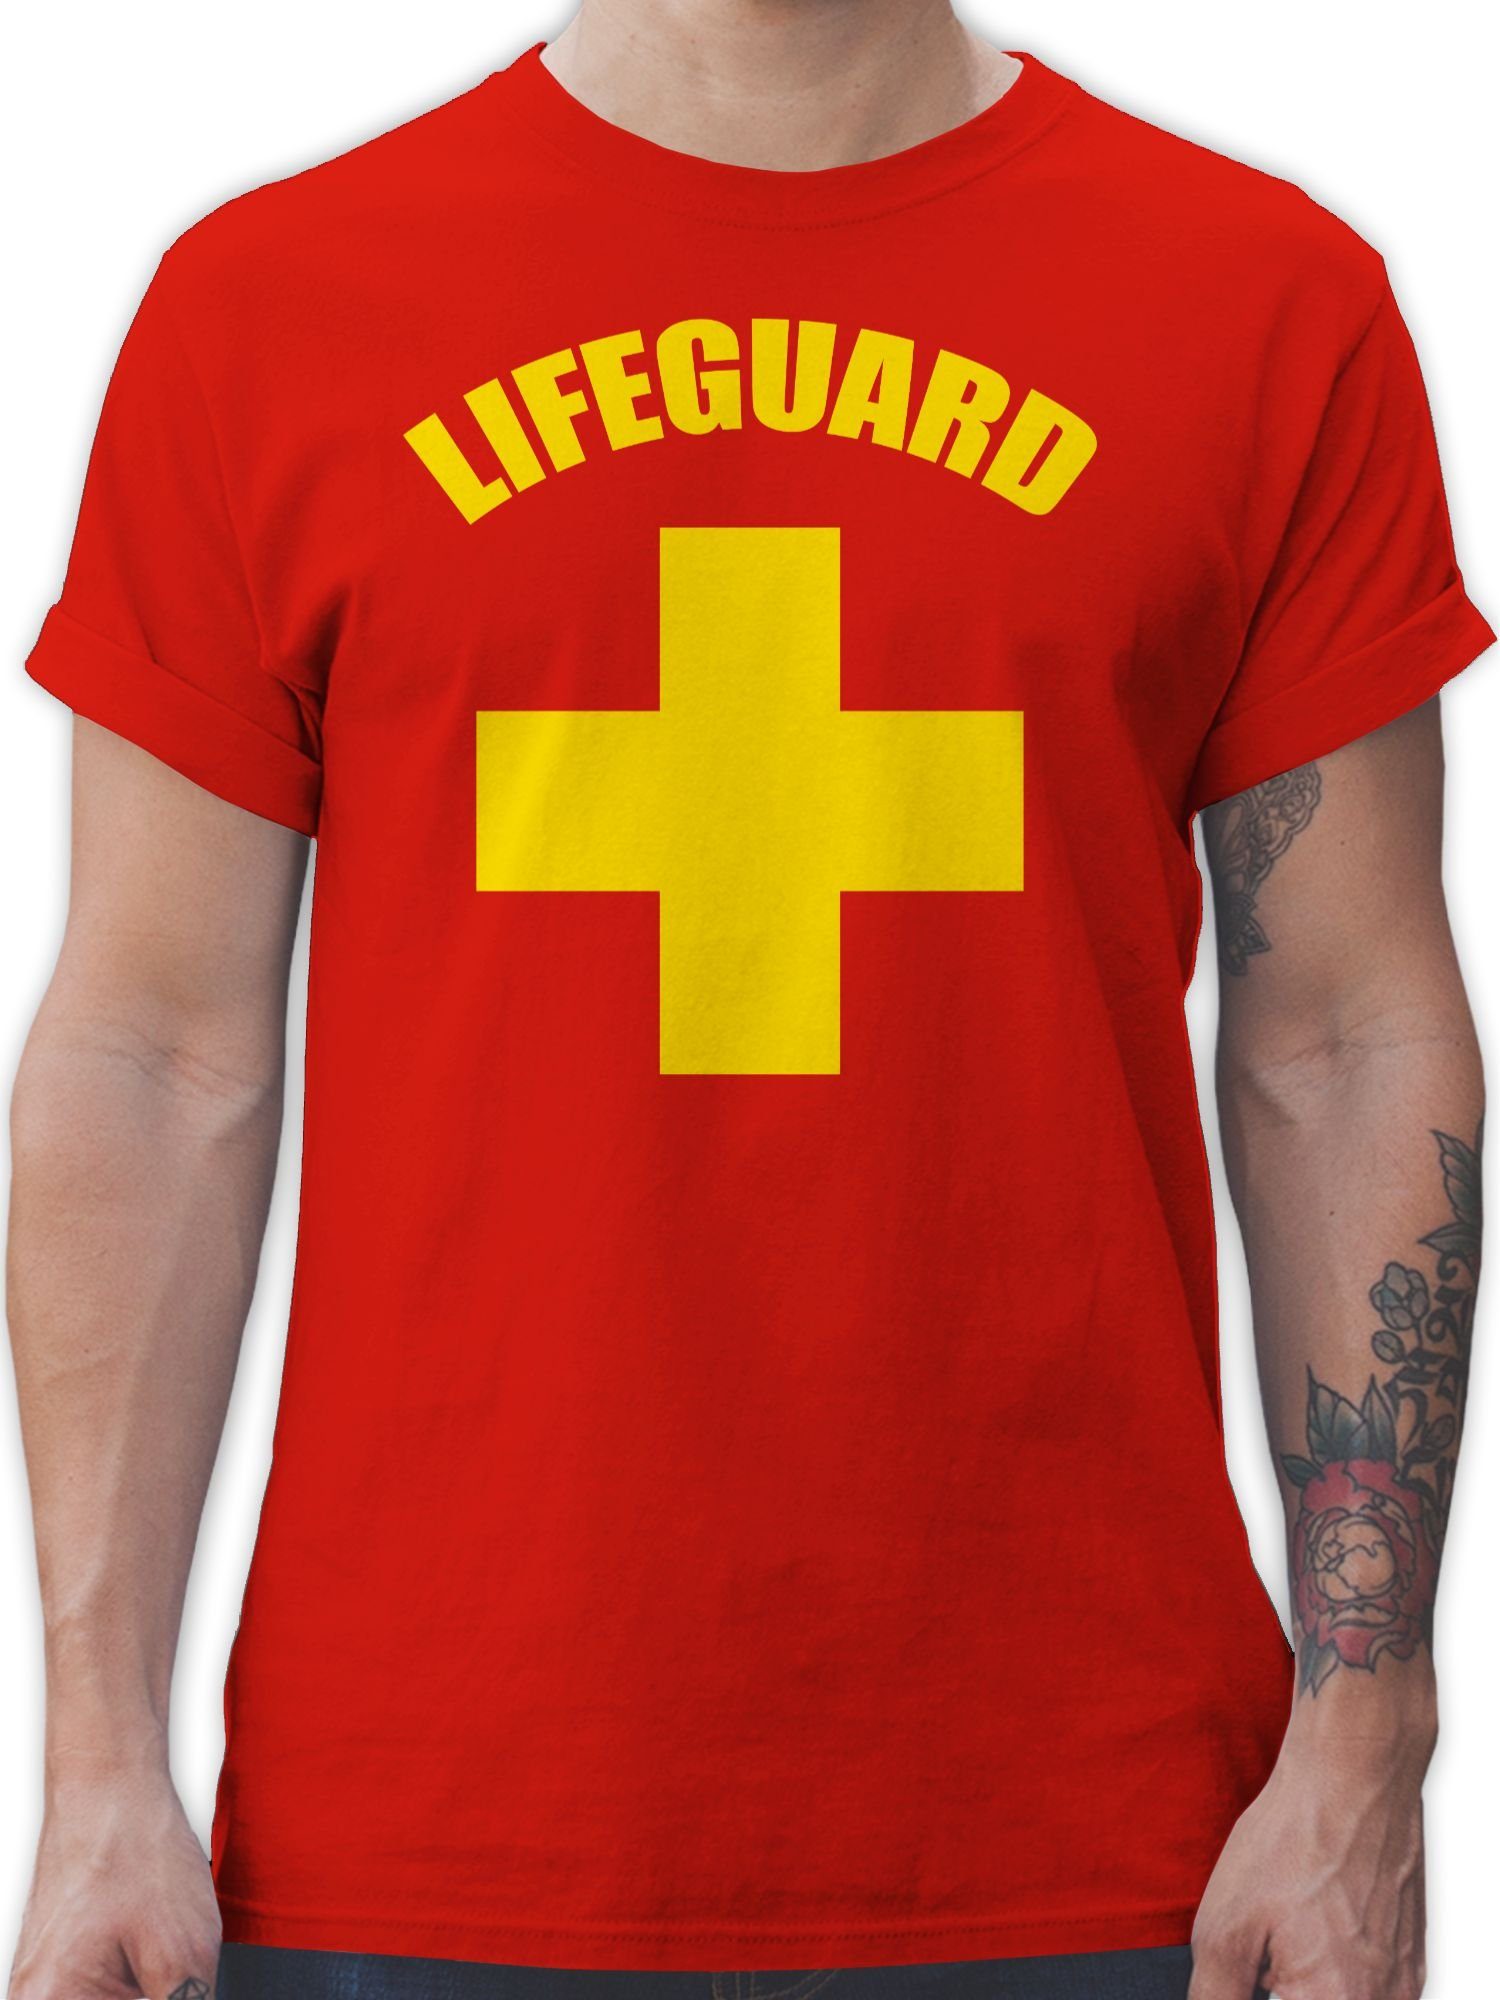 Lifeguard Karneval T-Shirt Shirtracer 1 Baywatch Outfit Wasserrettung Rot Rettungsschwimmer